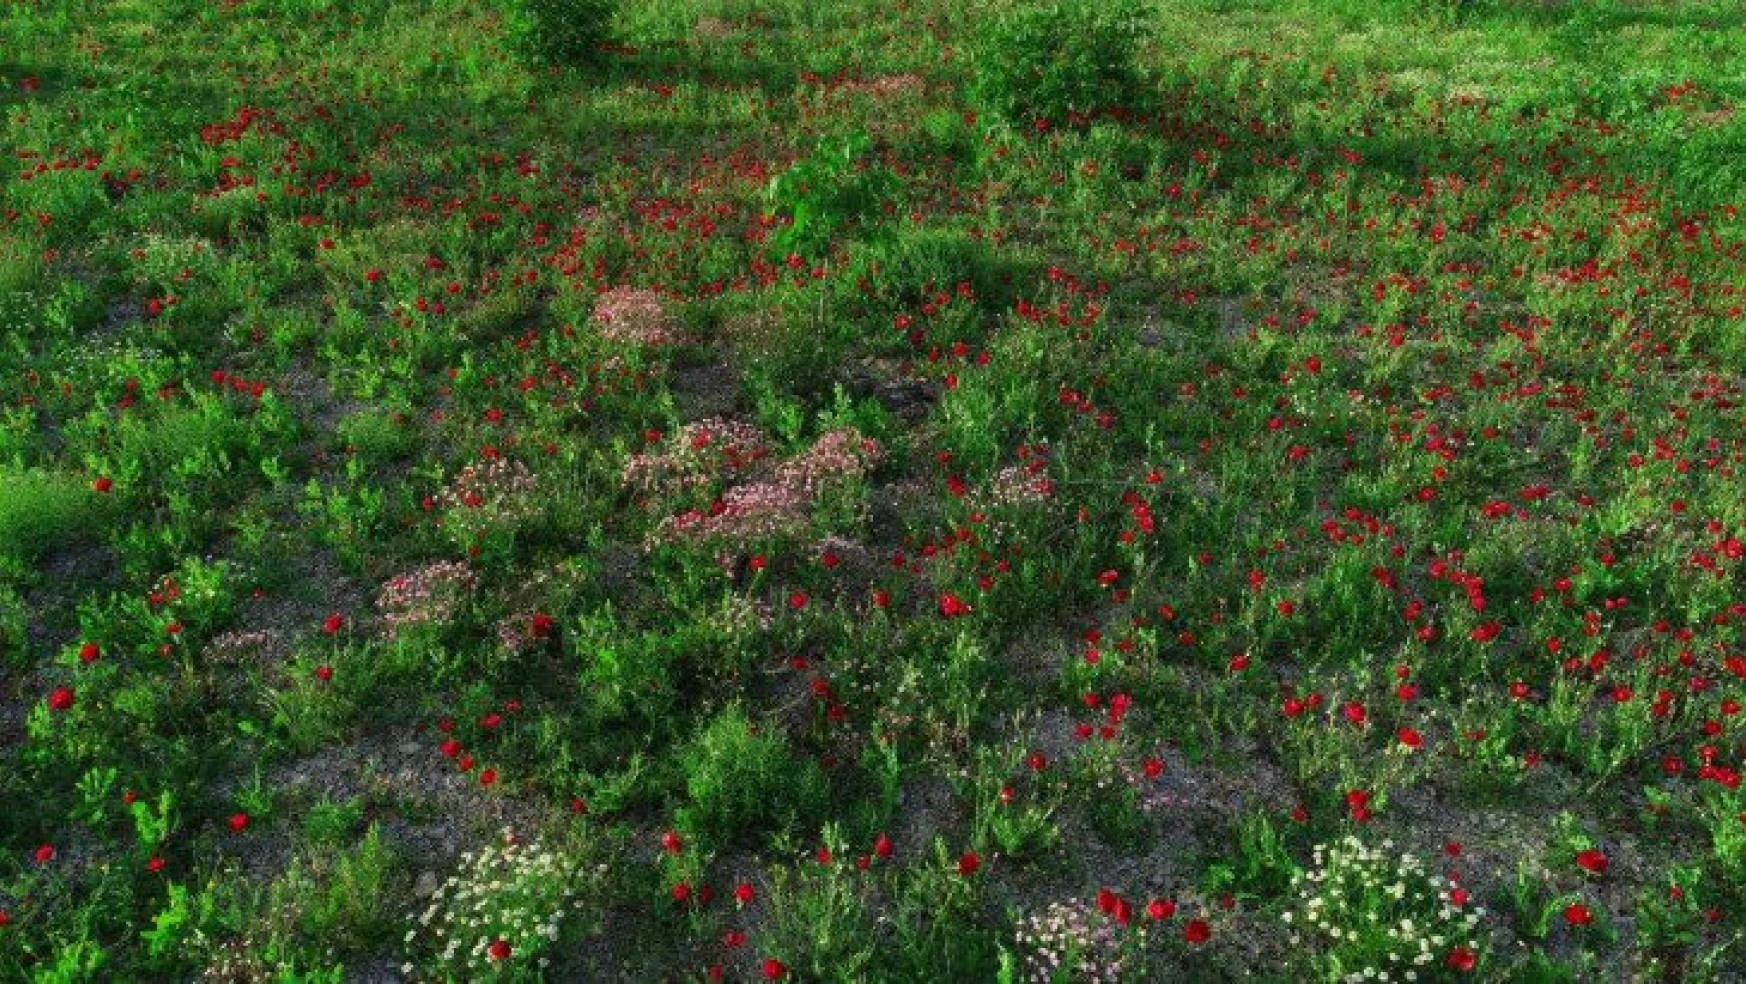 Şırnak'ta tarlalar kırmızıya boyandı, fotoğrafçılar için doğal stüdyo oldu